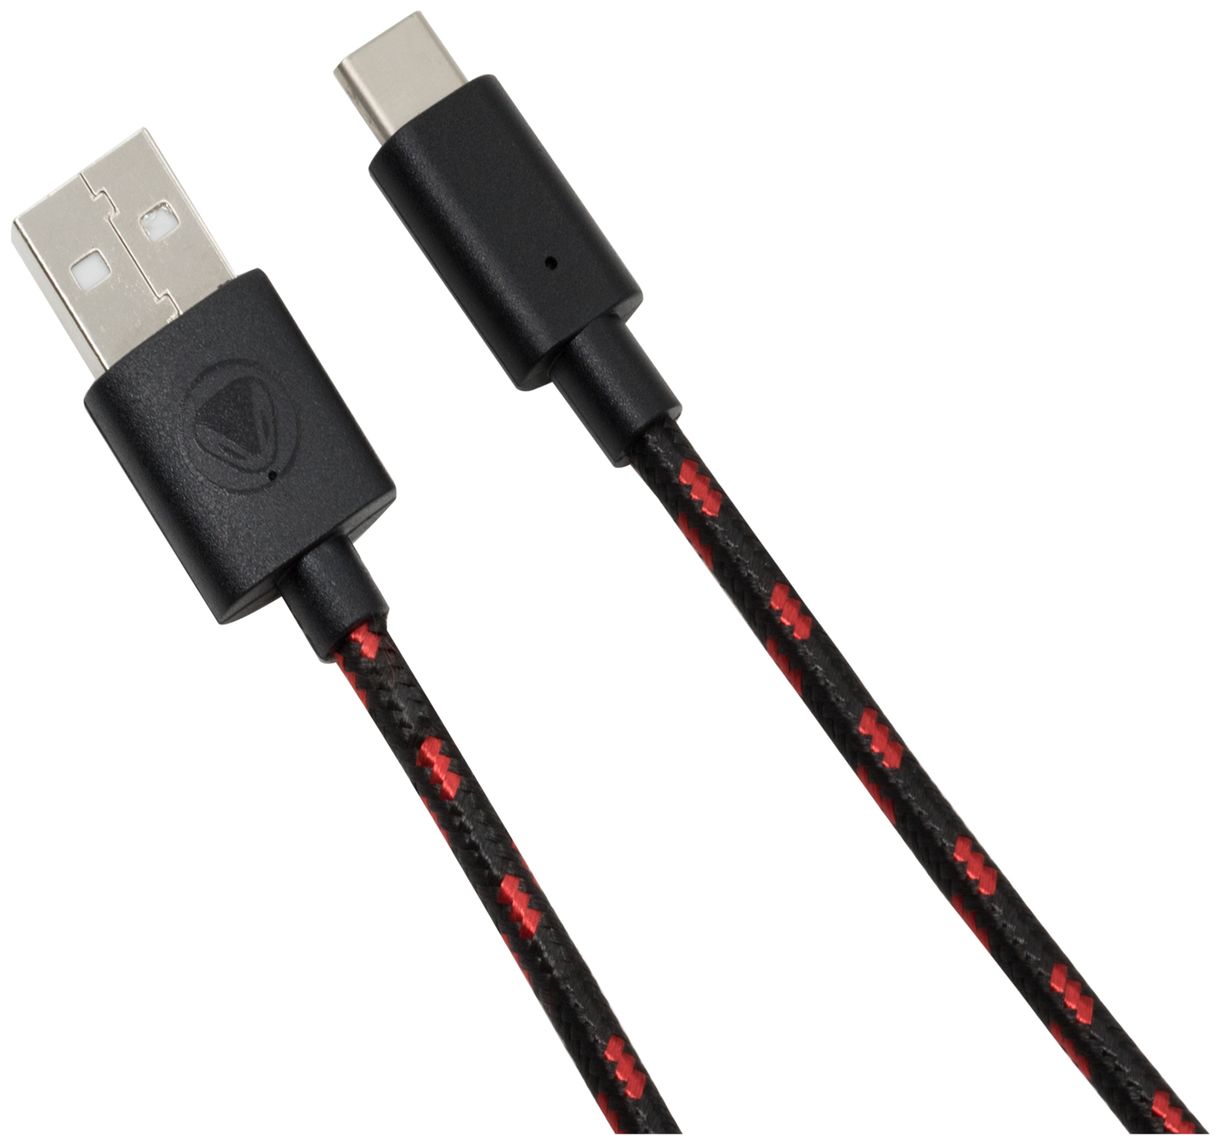 USB Ladekabel 3m Nintendo Switch (Schwarz, Rot) 